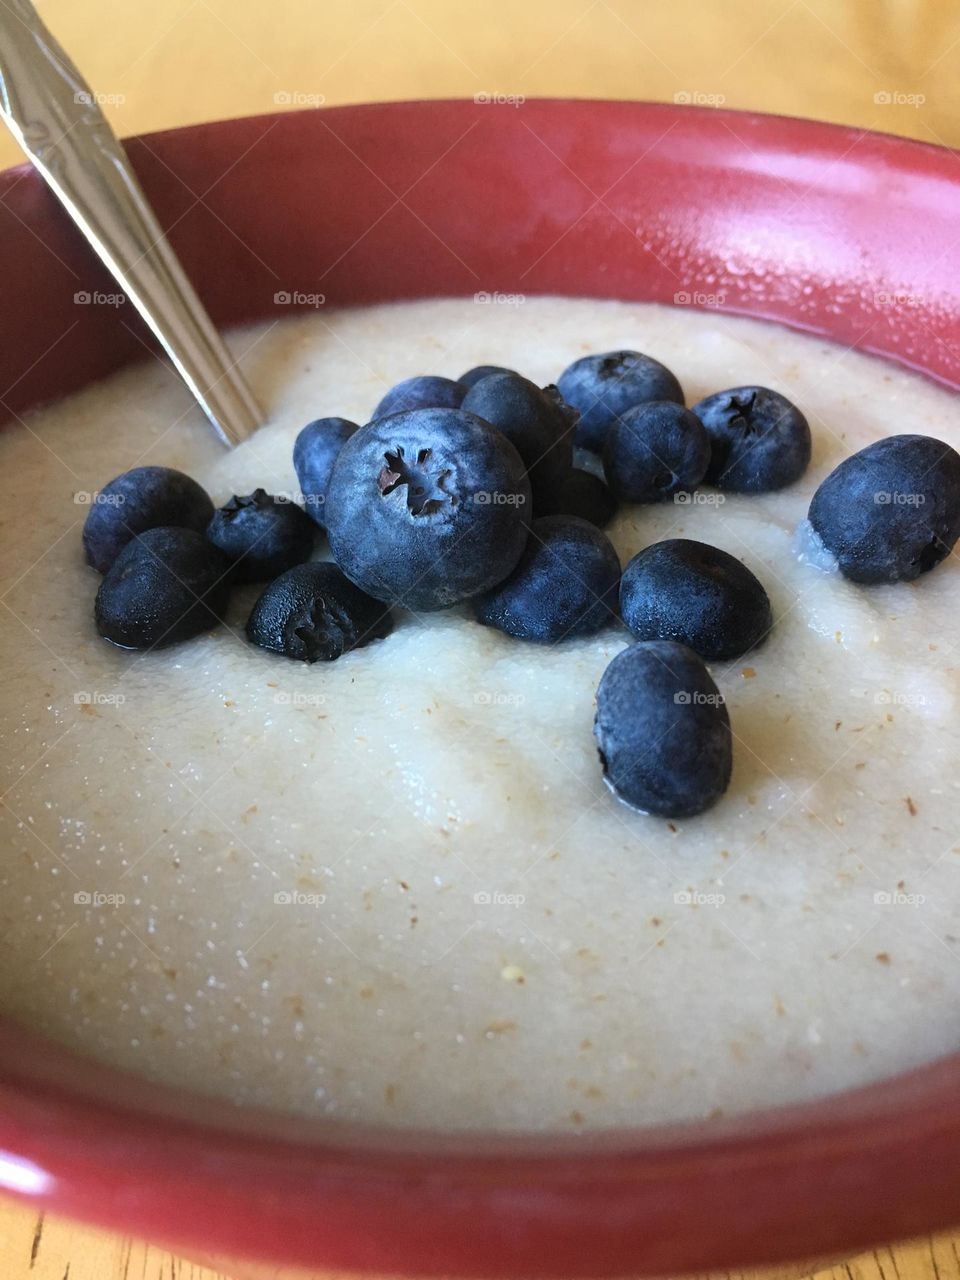 Blueberries for breakfast 